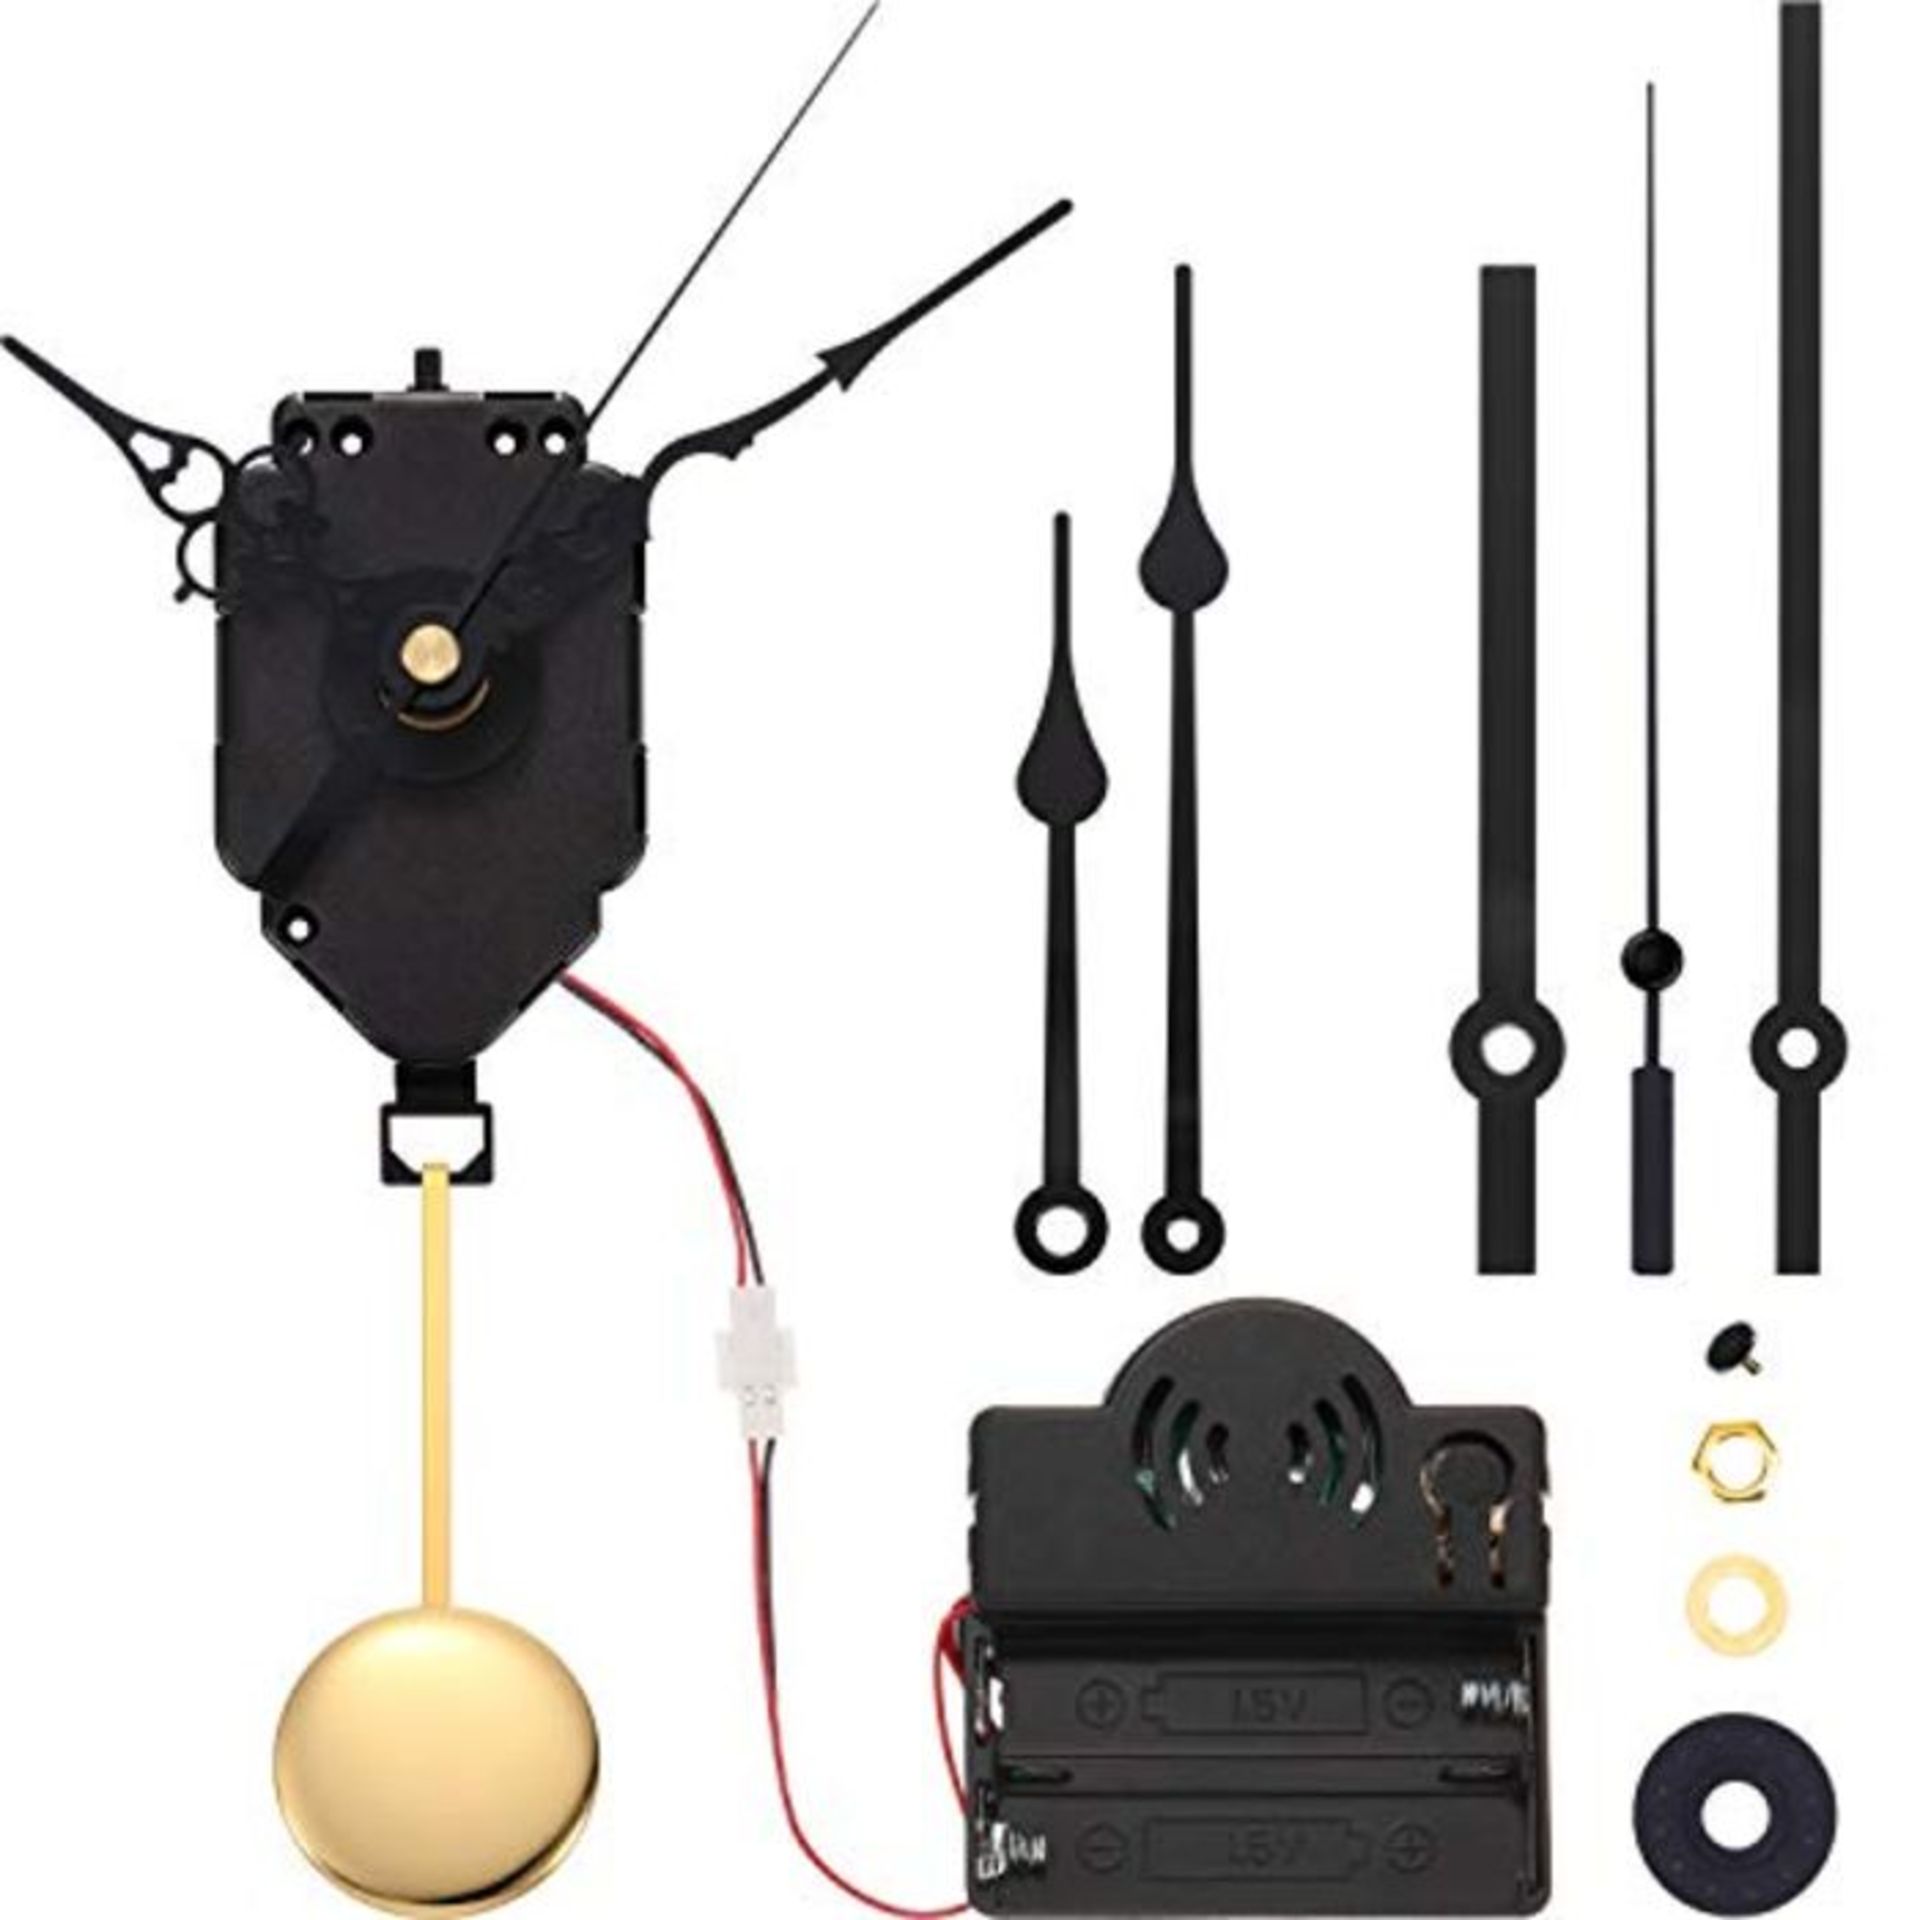 Hicarer Quartz Pendulum Trigger Clock Movement Chime Music Box Completer Pendulum Cloc